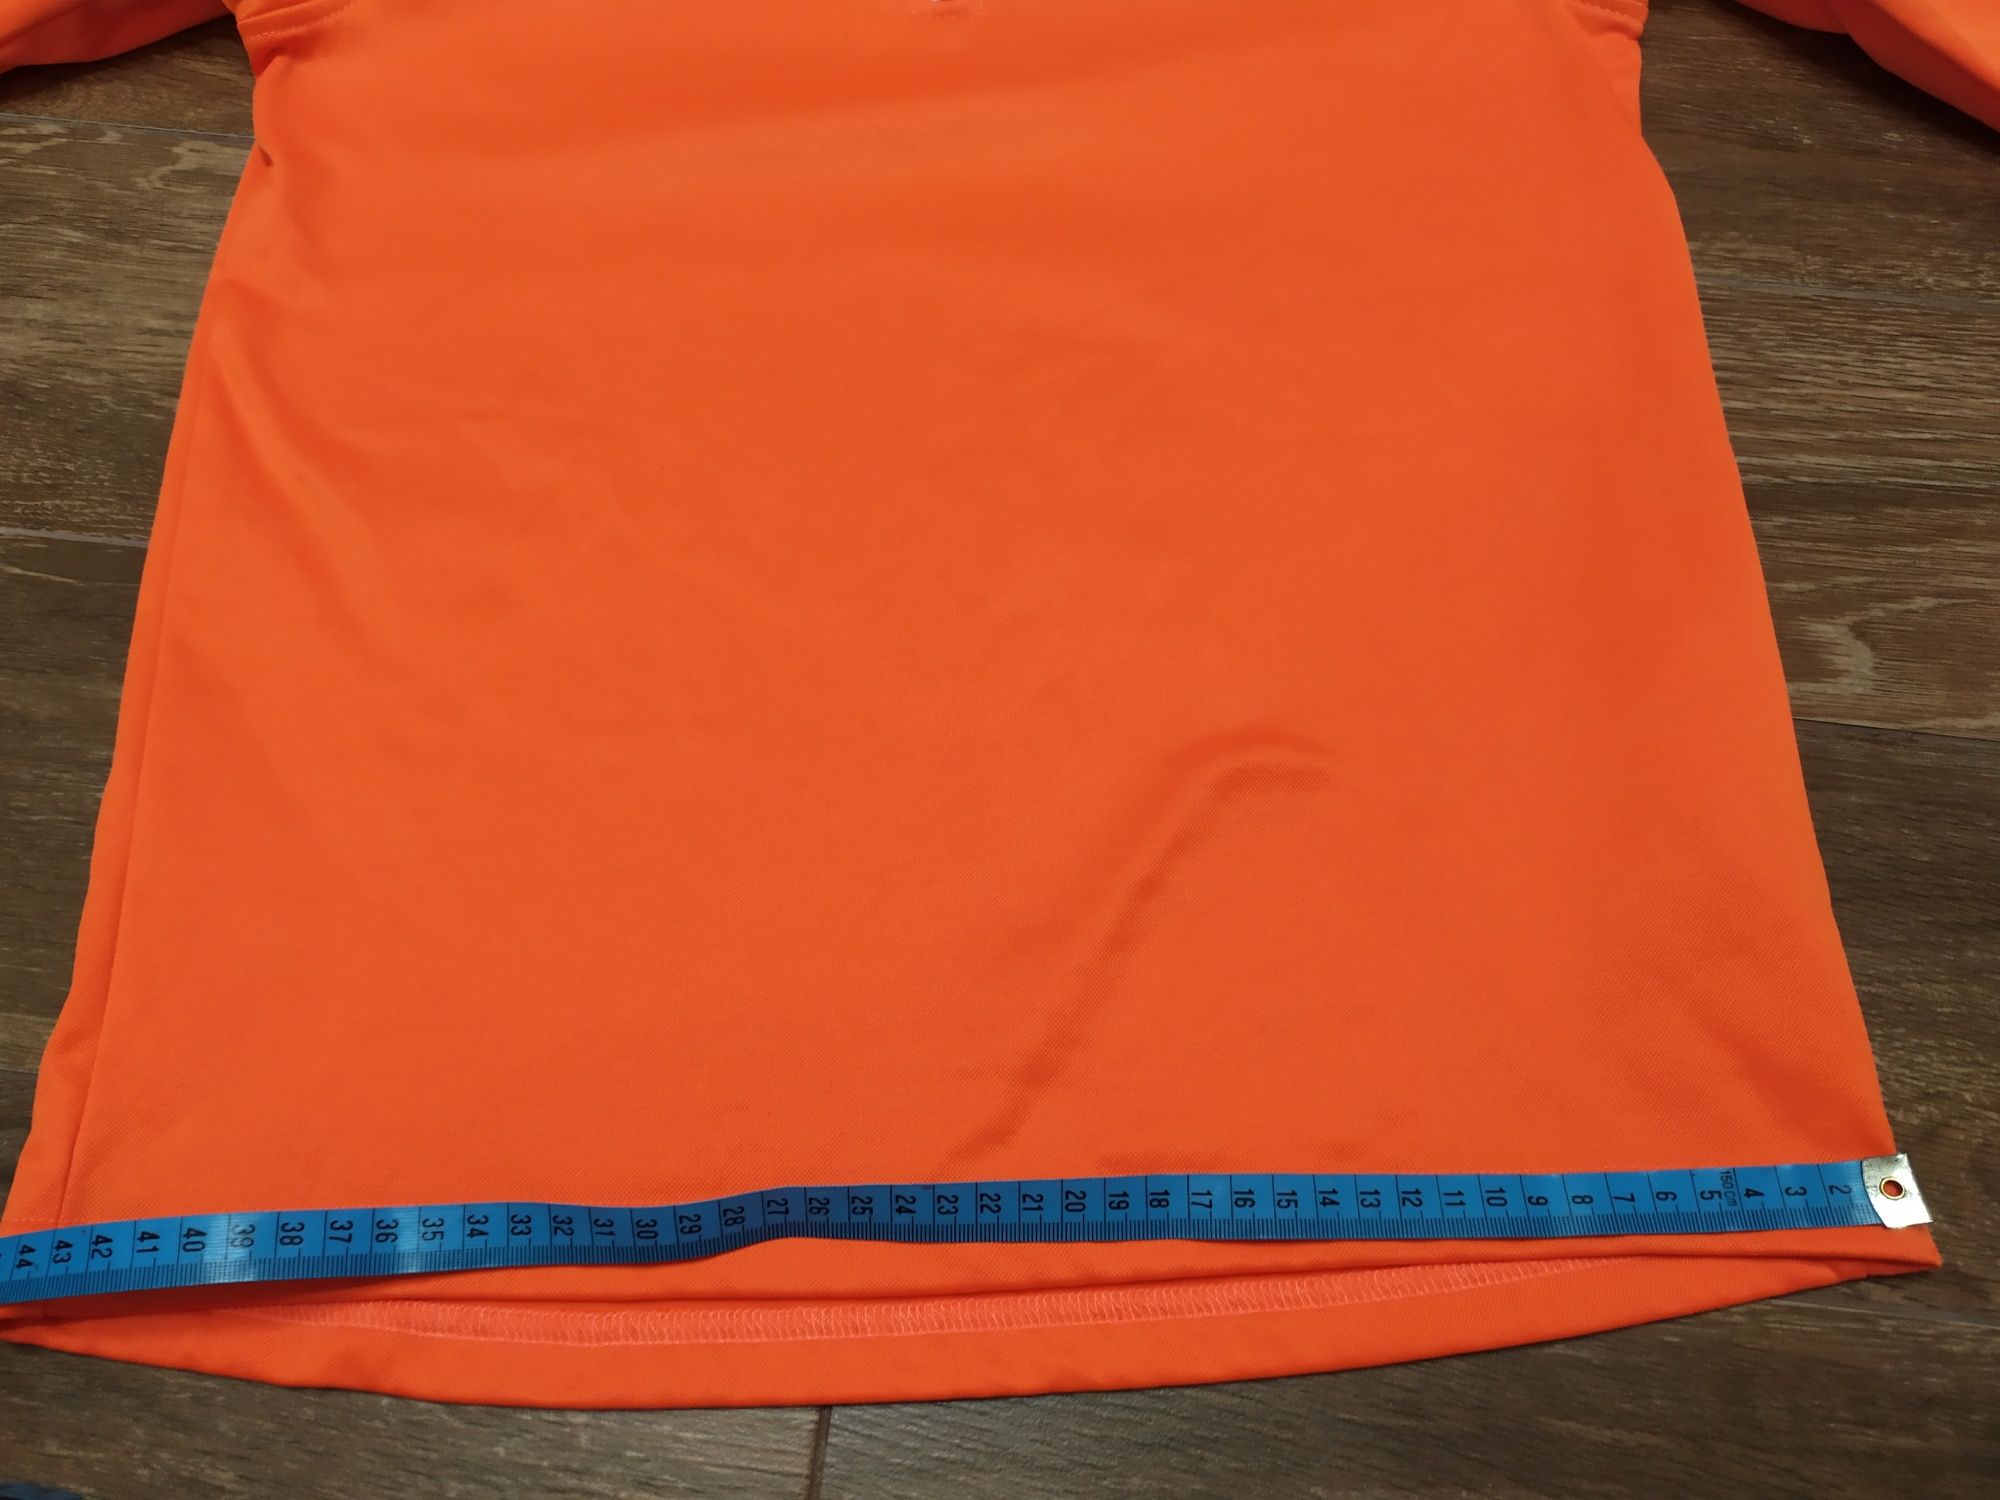 Neonowa pomarańczowa bluza dare2be rozmiar 164 lub s z Polakiem cienki